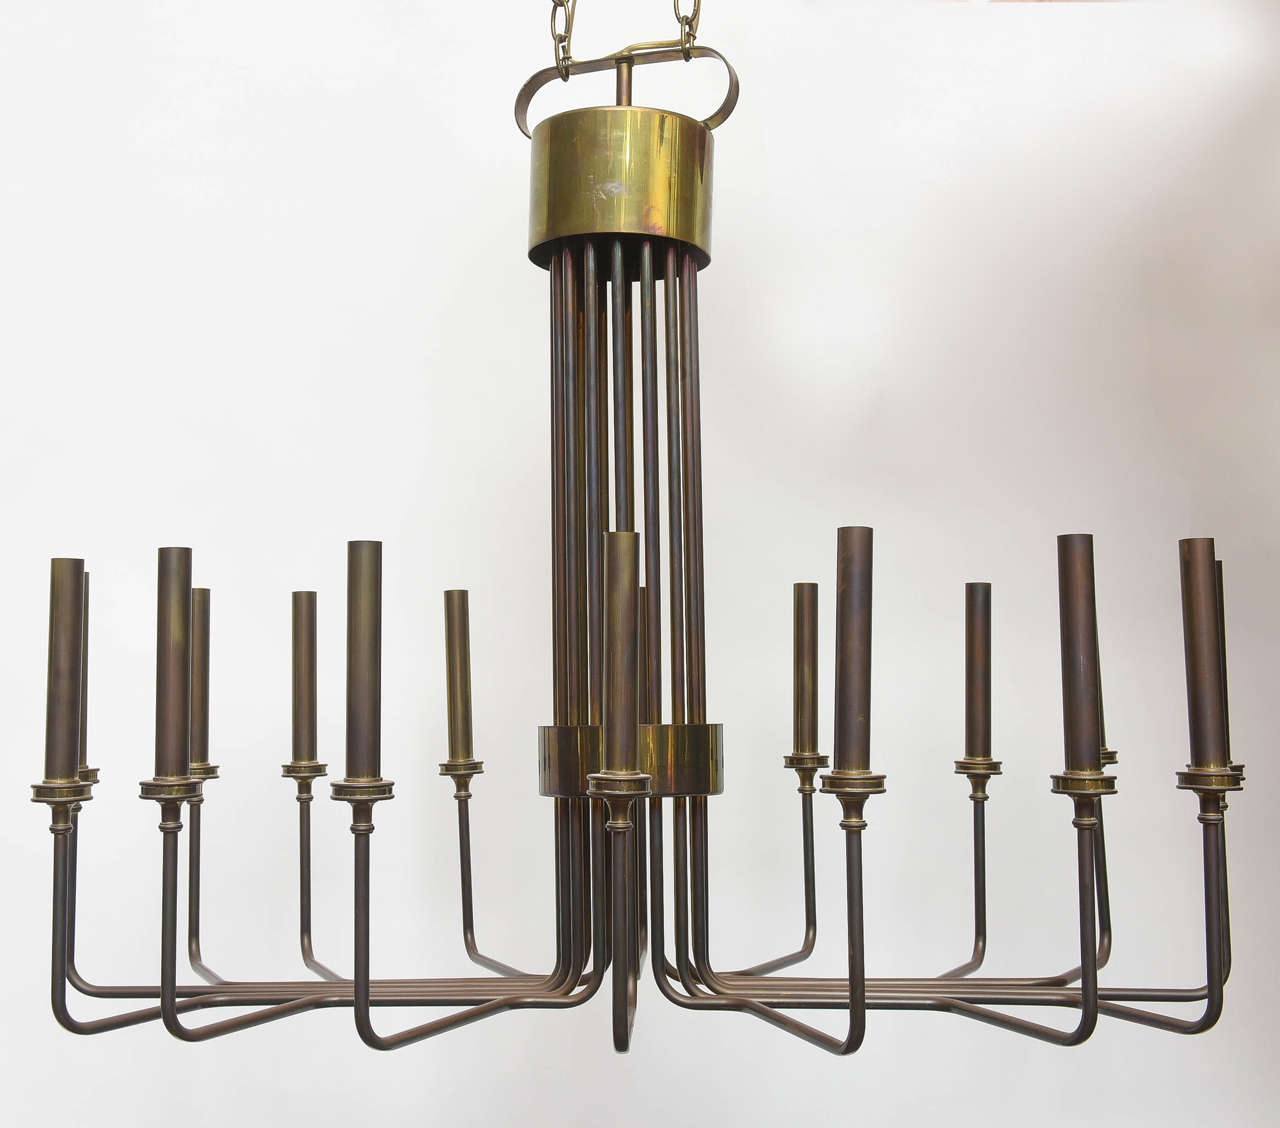 Sleek mid-century modern brass chandelier in oval shape, 16 lights.